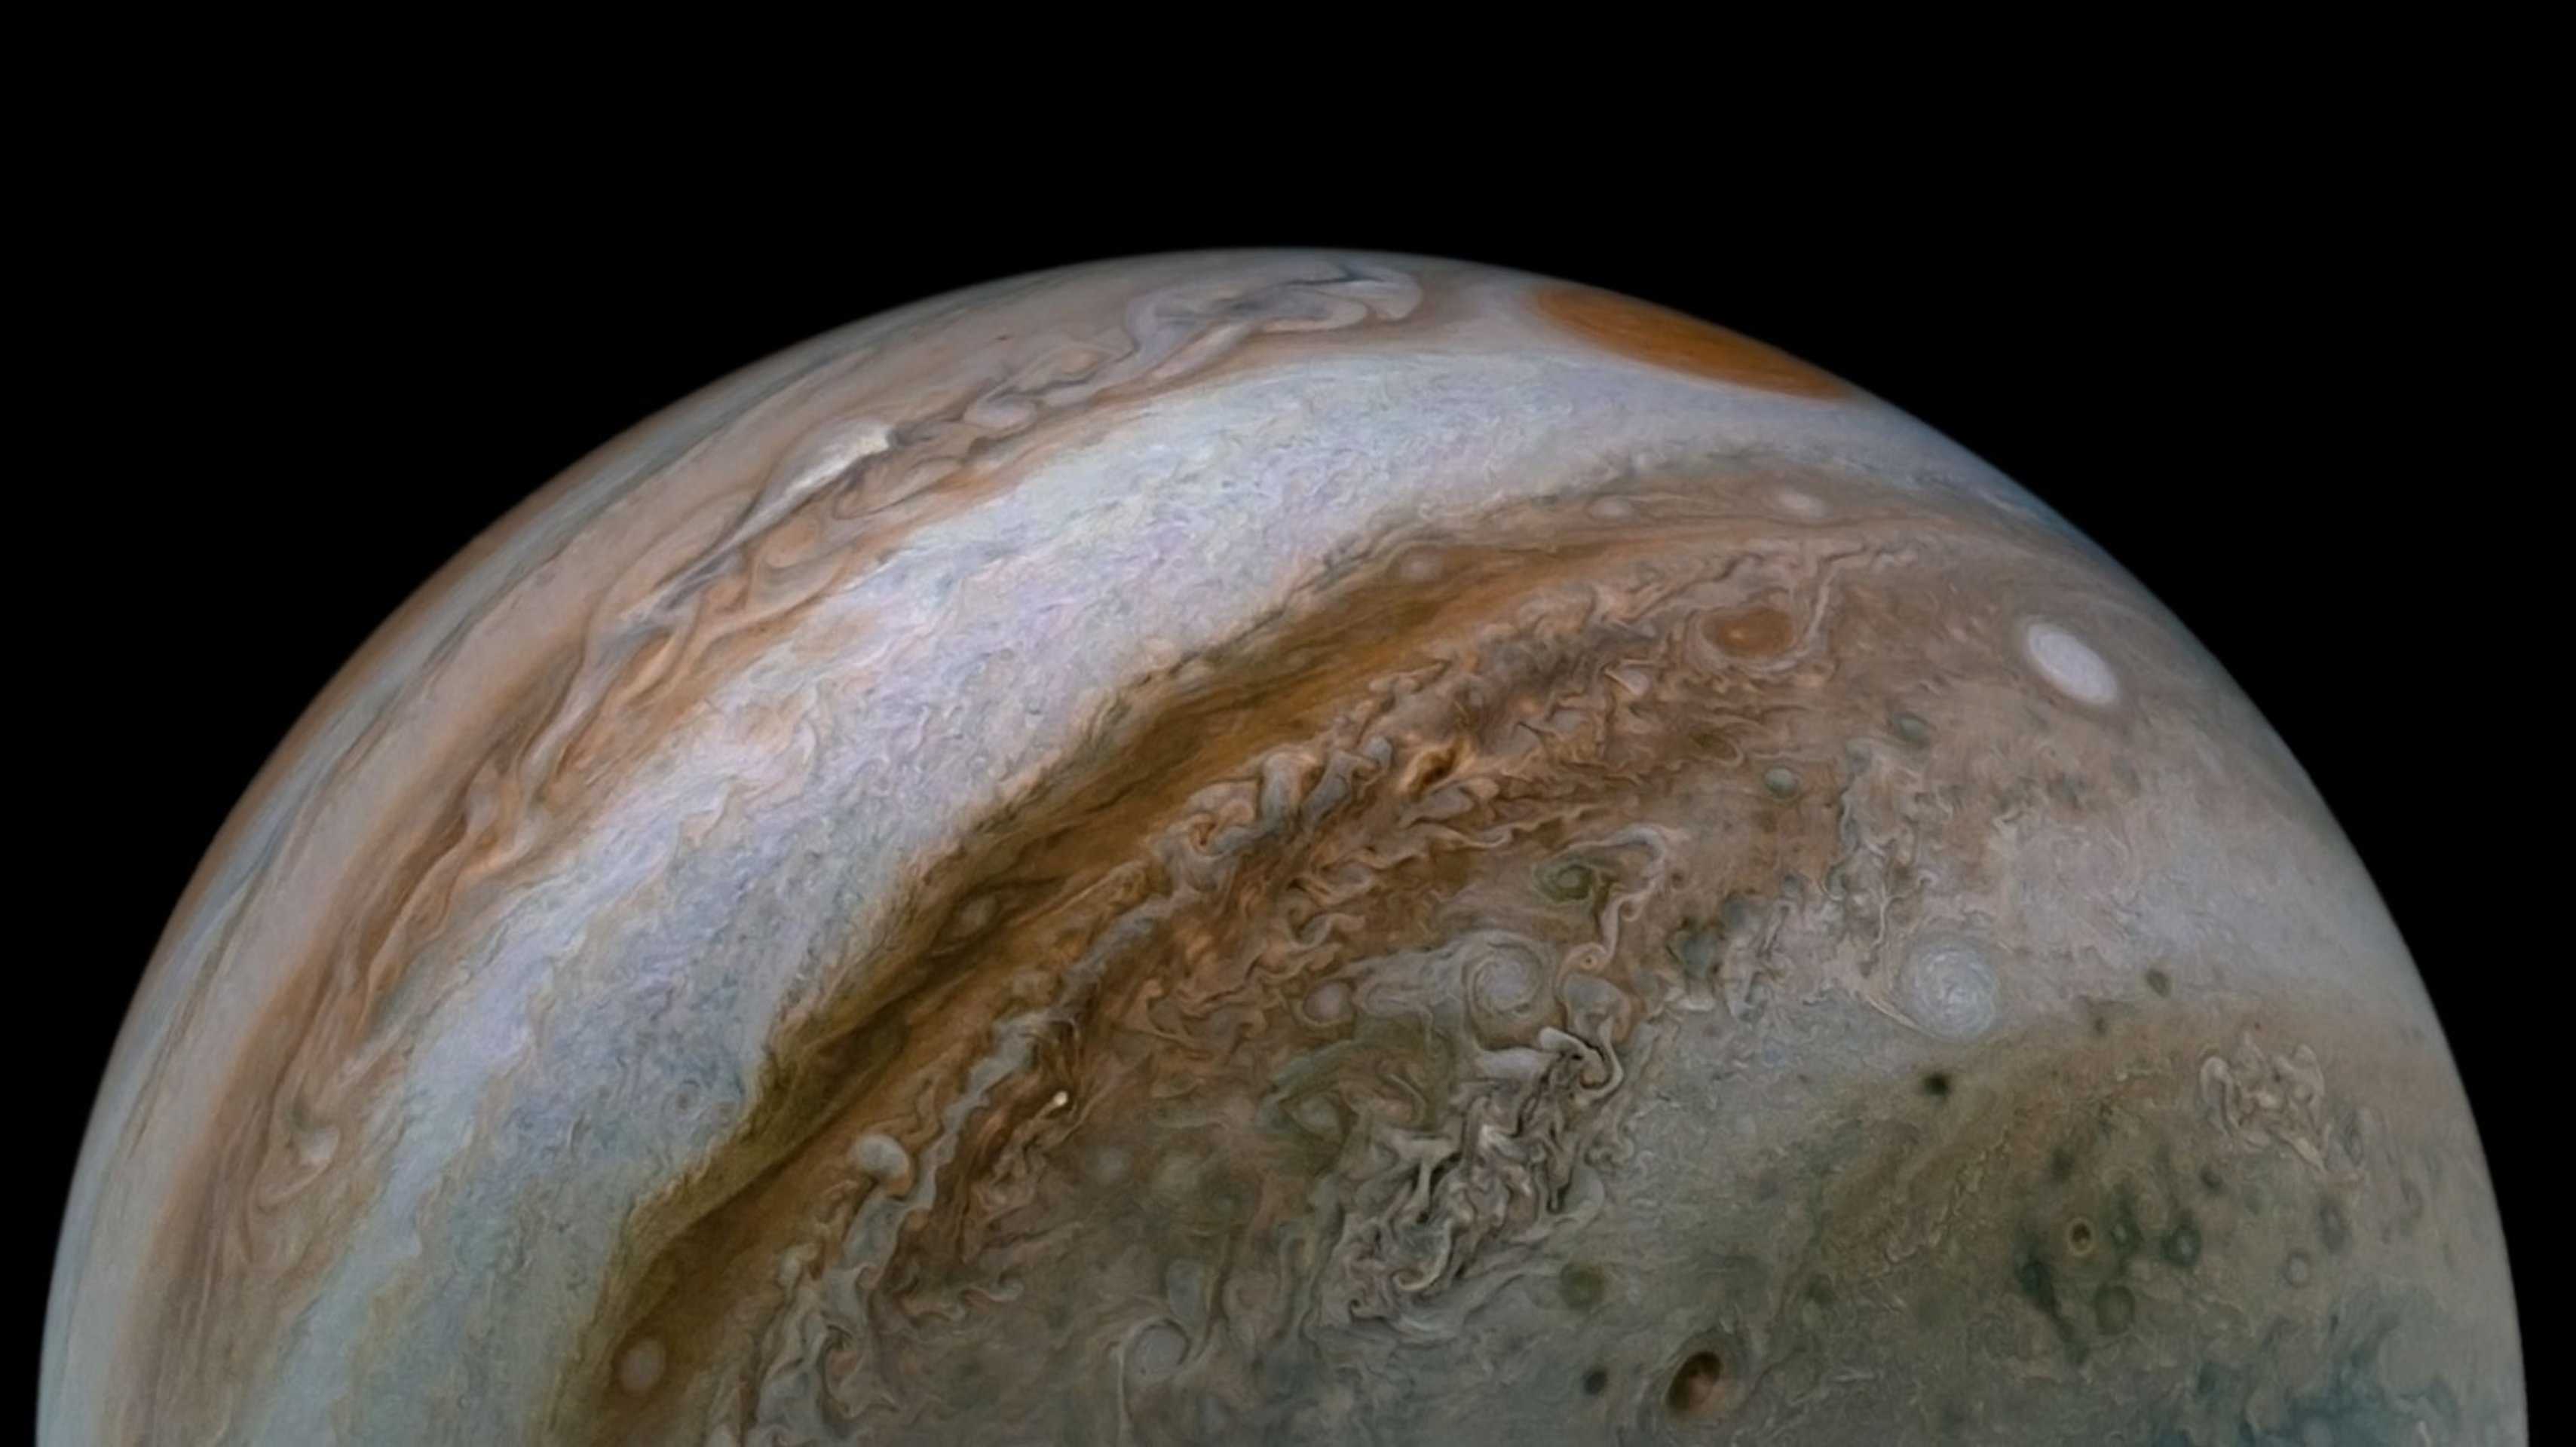 Ядро Юпитера оказалось частично растворенным в металлическом водороде